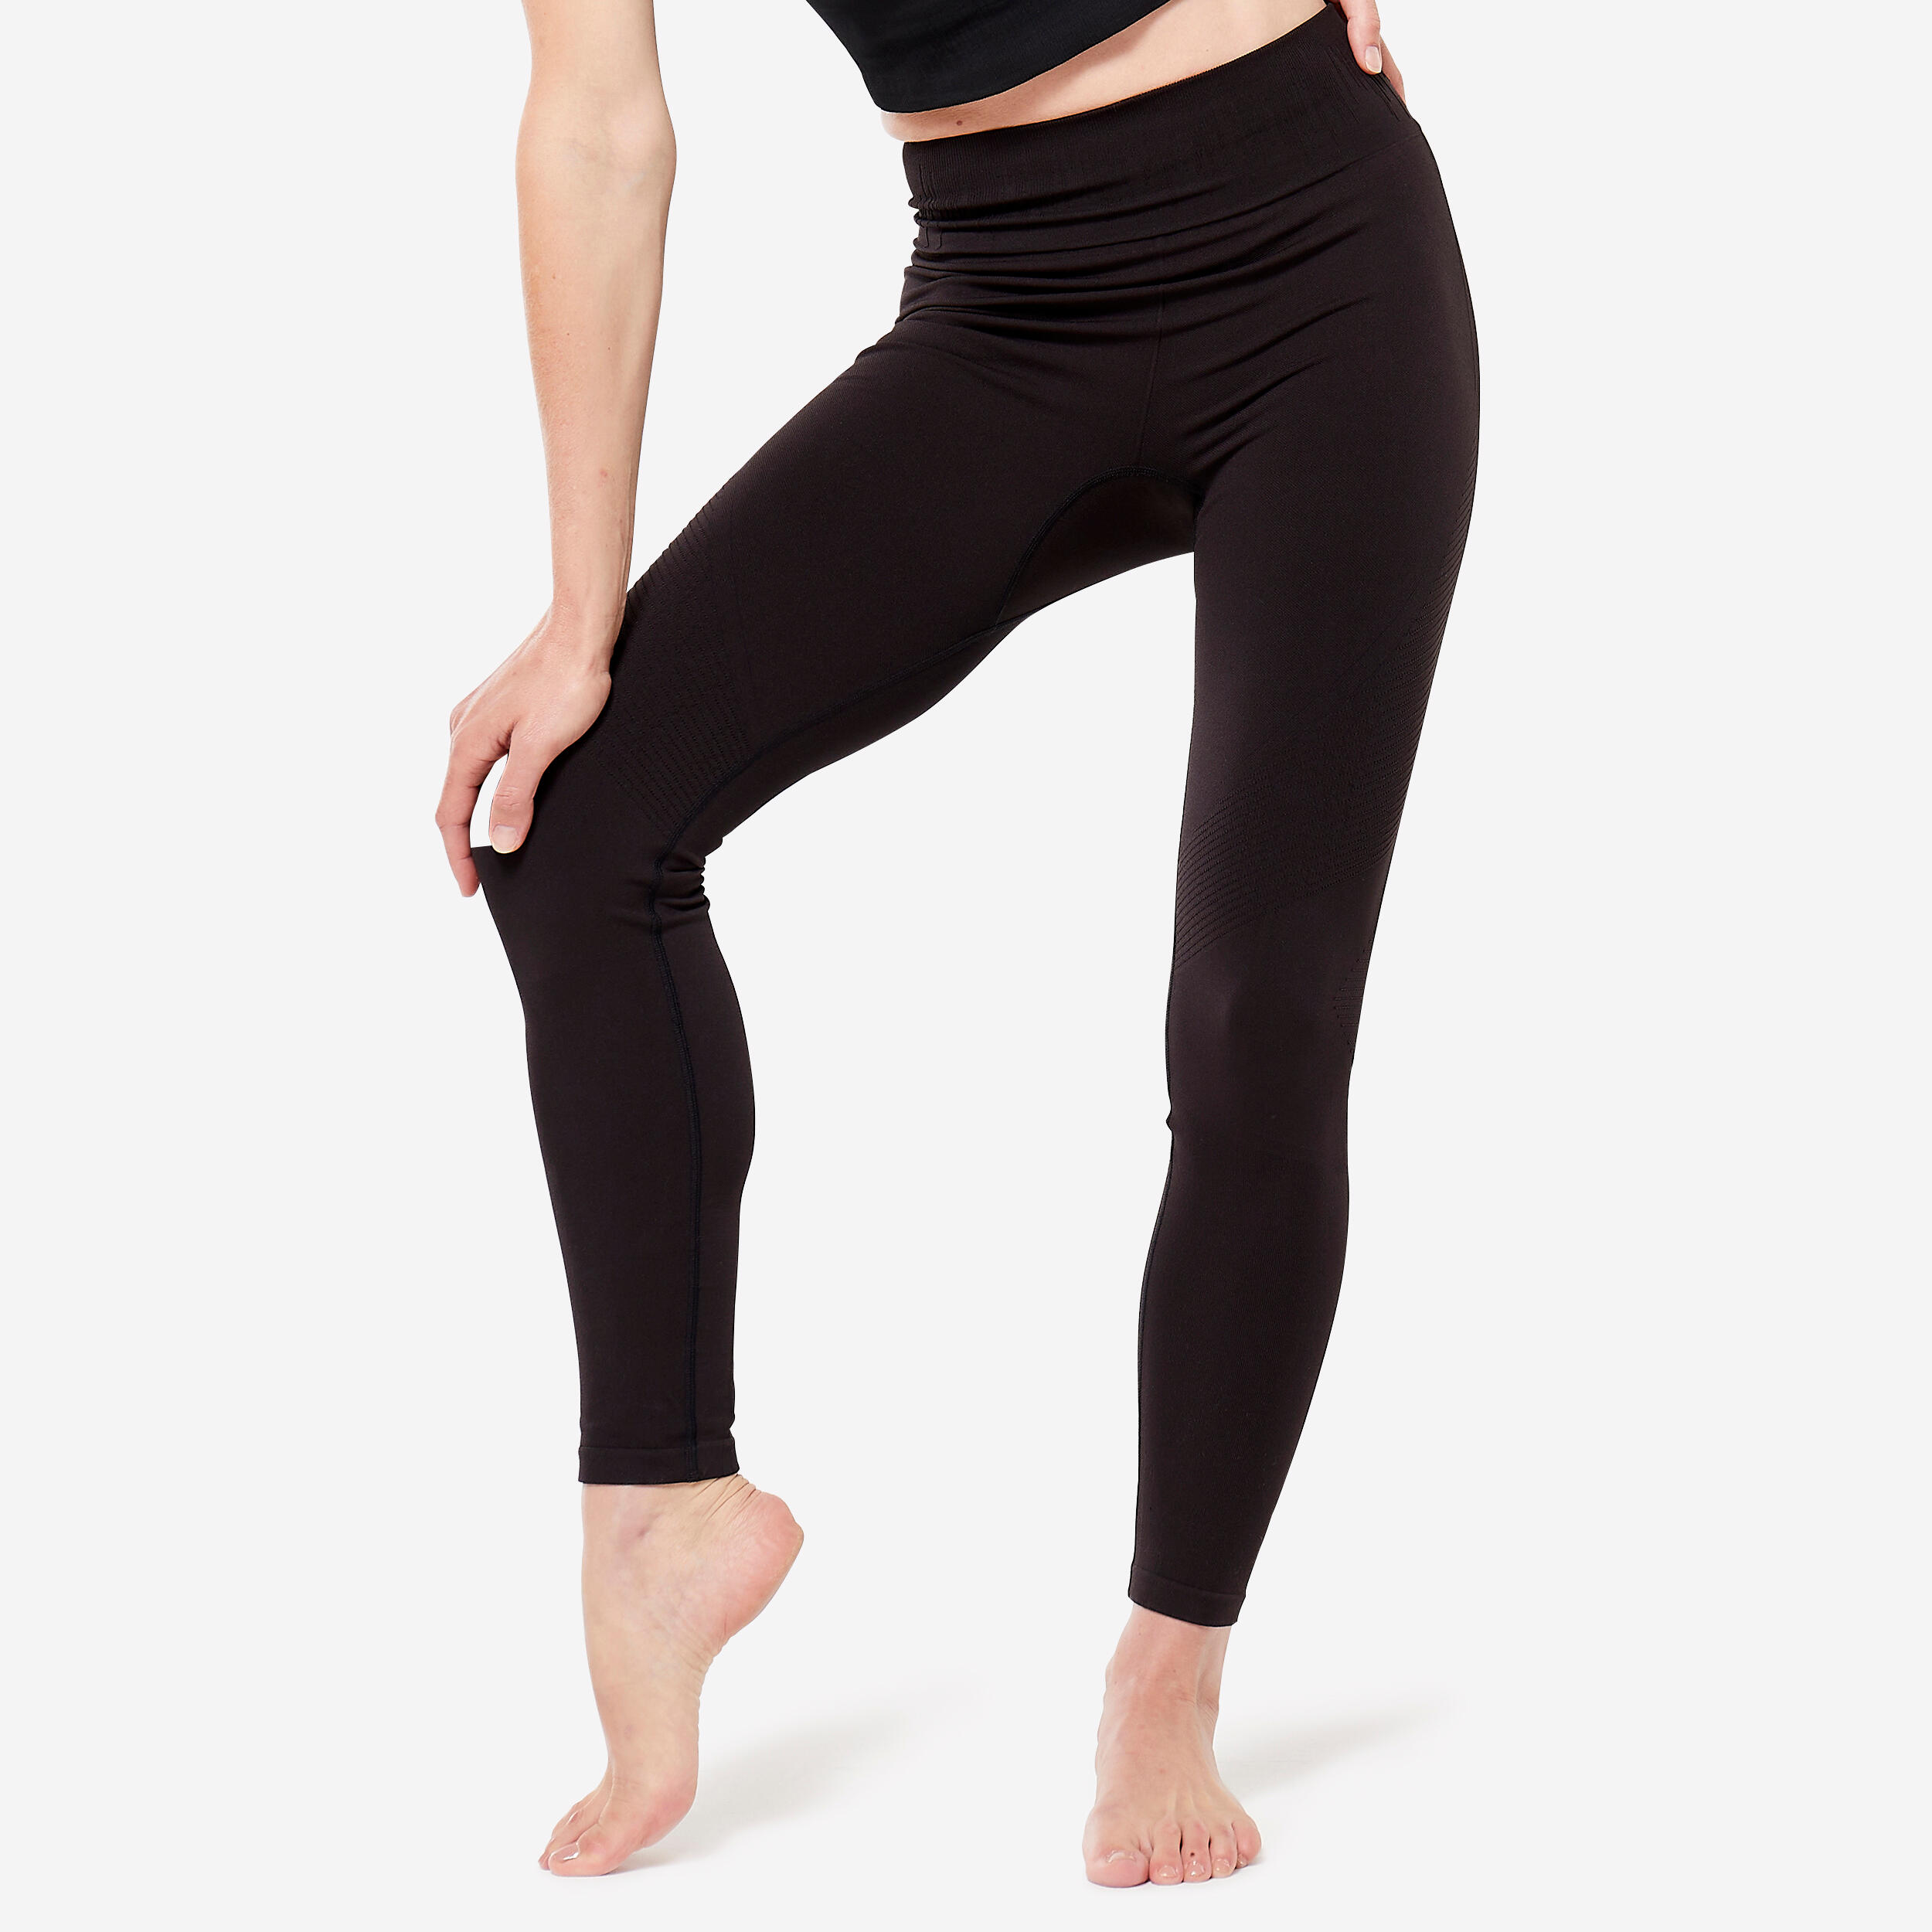  SJKLSQD Yoga Pants Women Leggings for Fitness Nylon